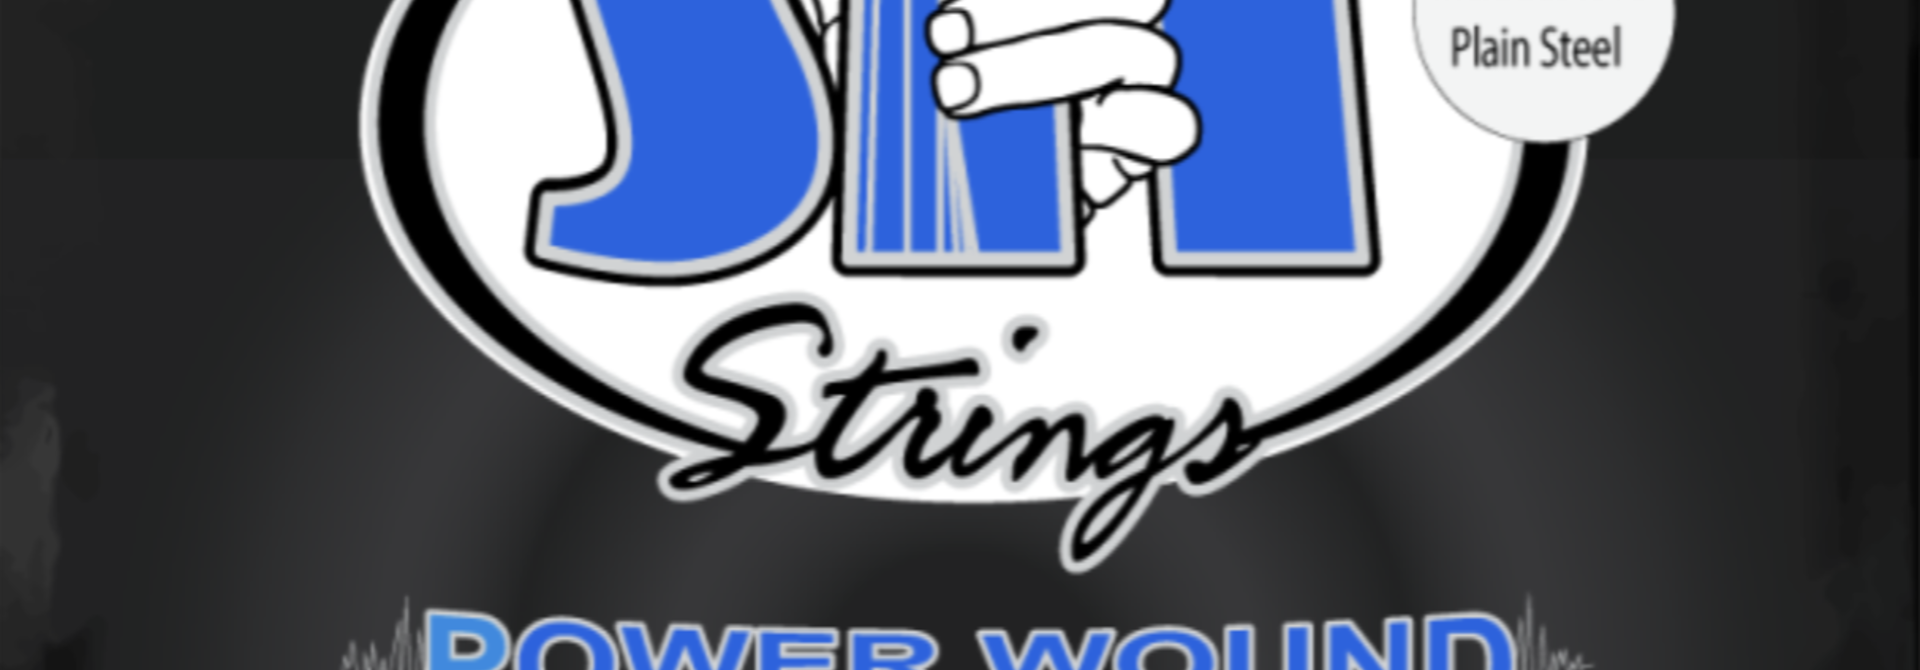 S.I.T. Strings S1150 Power Wound Nickel Medium Light 11-50